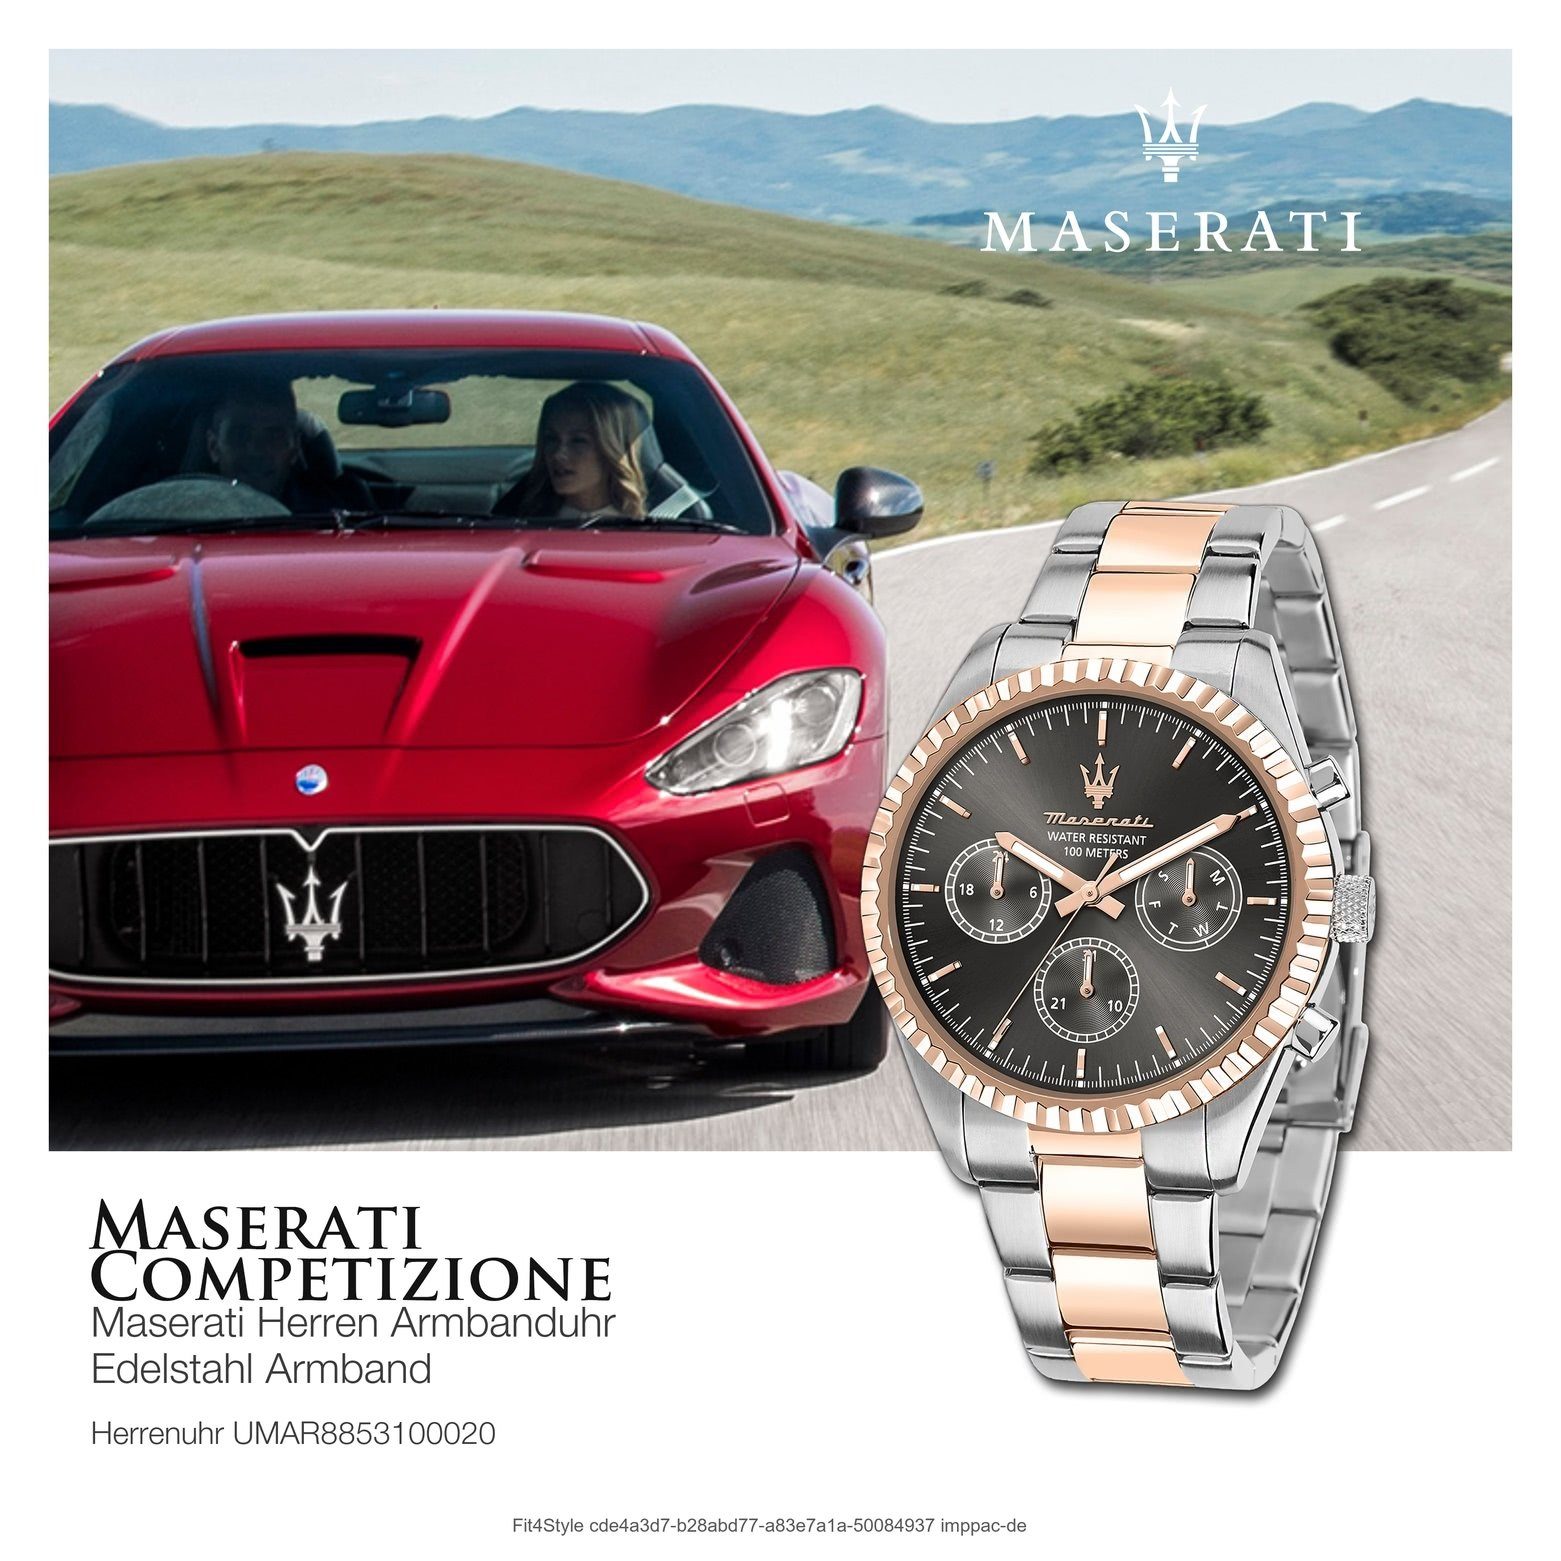 Herren rund, Edelstahlarmband, Herrenuhr Italy schwarz groß 51,5x43mm) Maserati Made-In (ca. rosé, Multifunktionsuhr MASERATI Multifunktion,